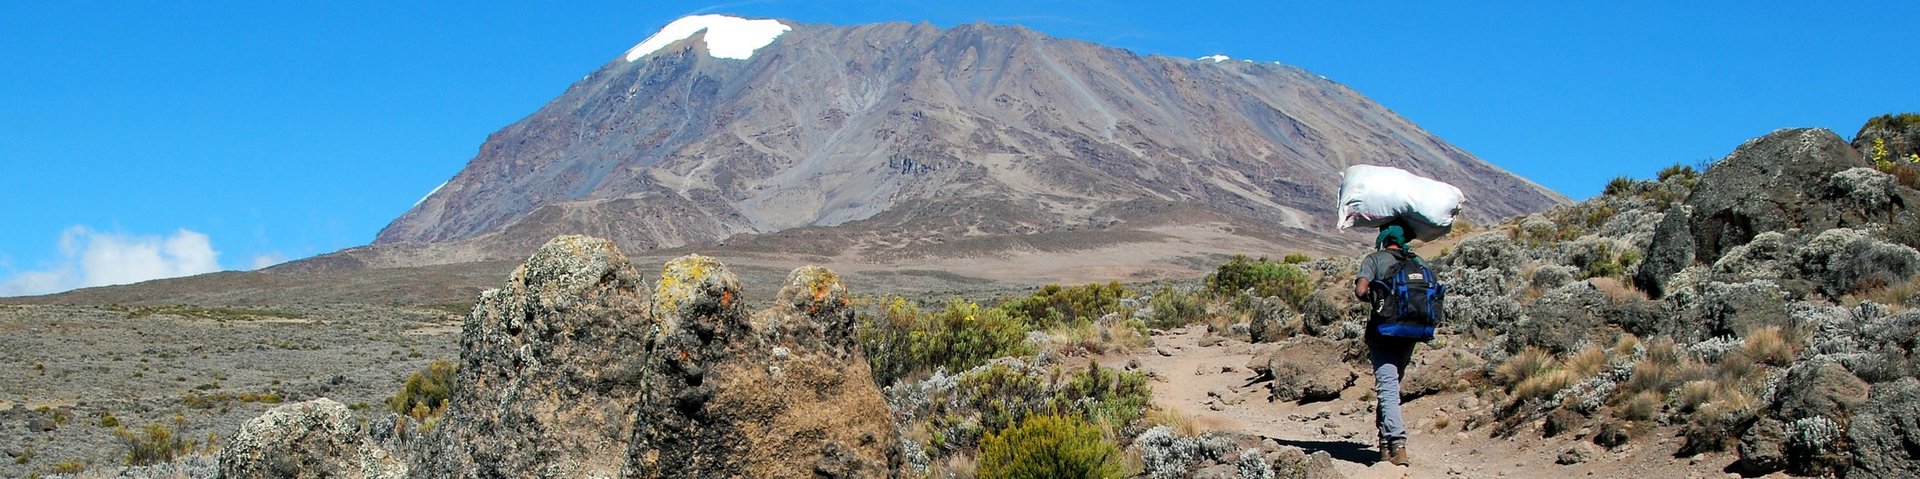 Kilimanjaro auf der Machame-Route